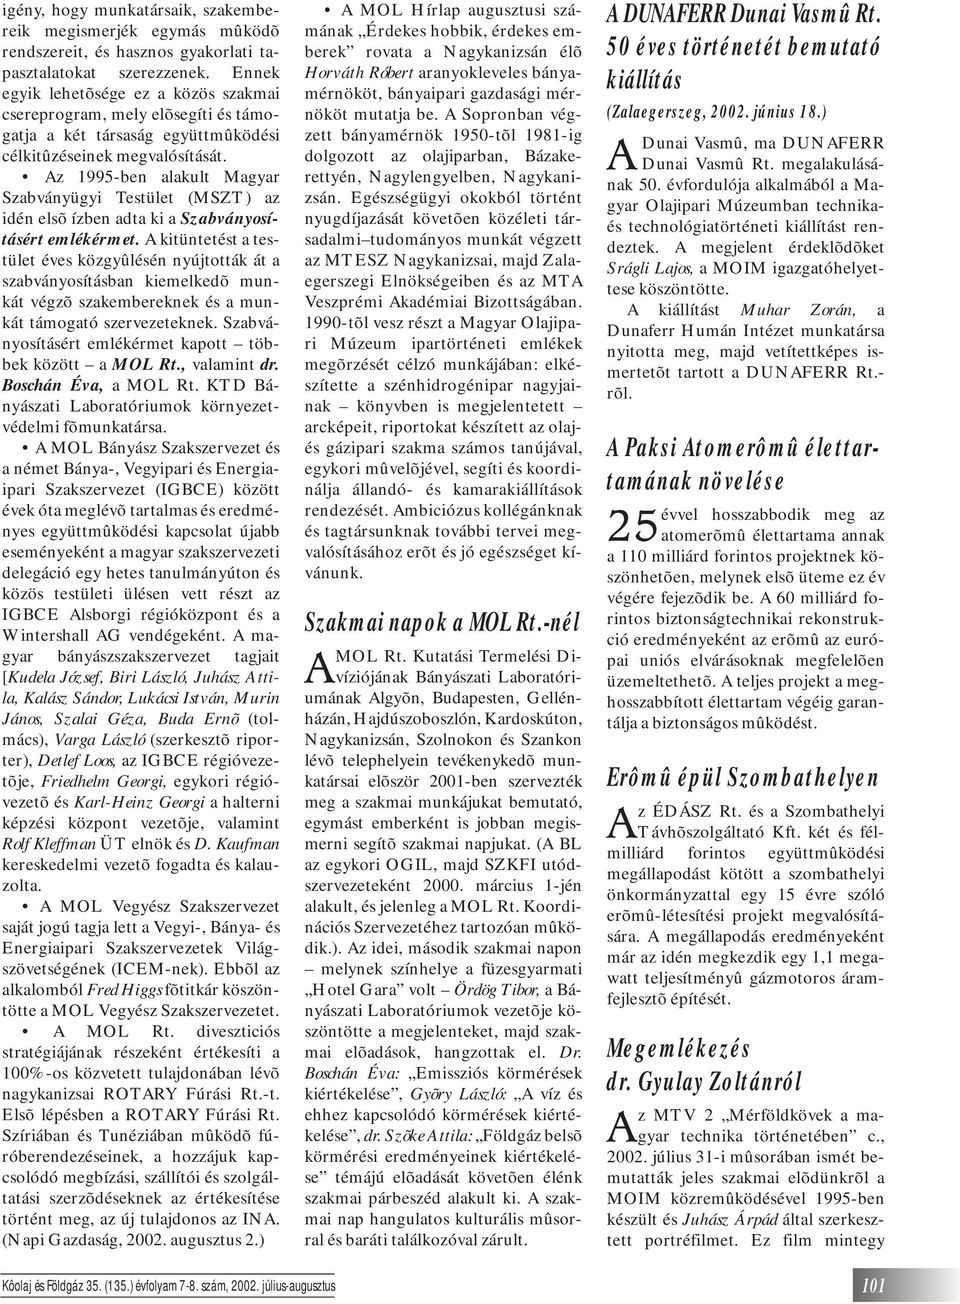 Az 1995-ben alakult Magyar Szabványügyi Testület (MSZT) az idén elsõ ízben adta ki a Szabványosításért emlékérmet.